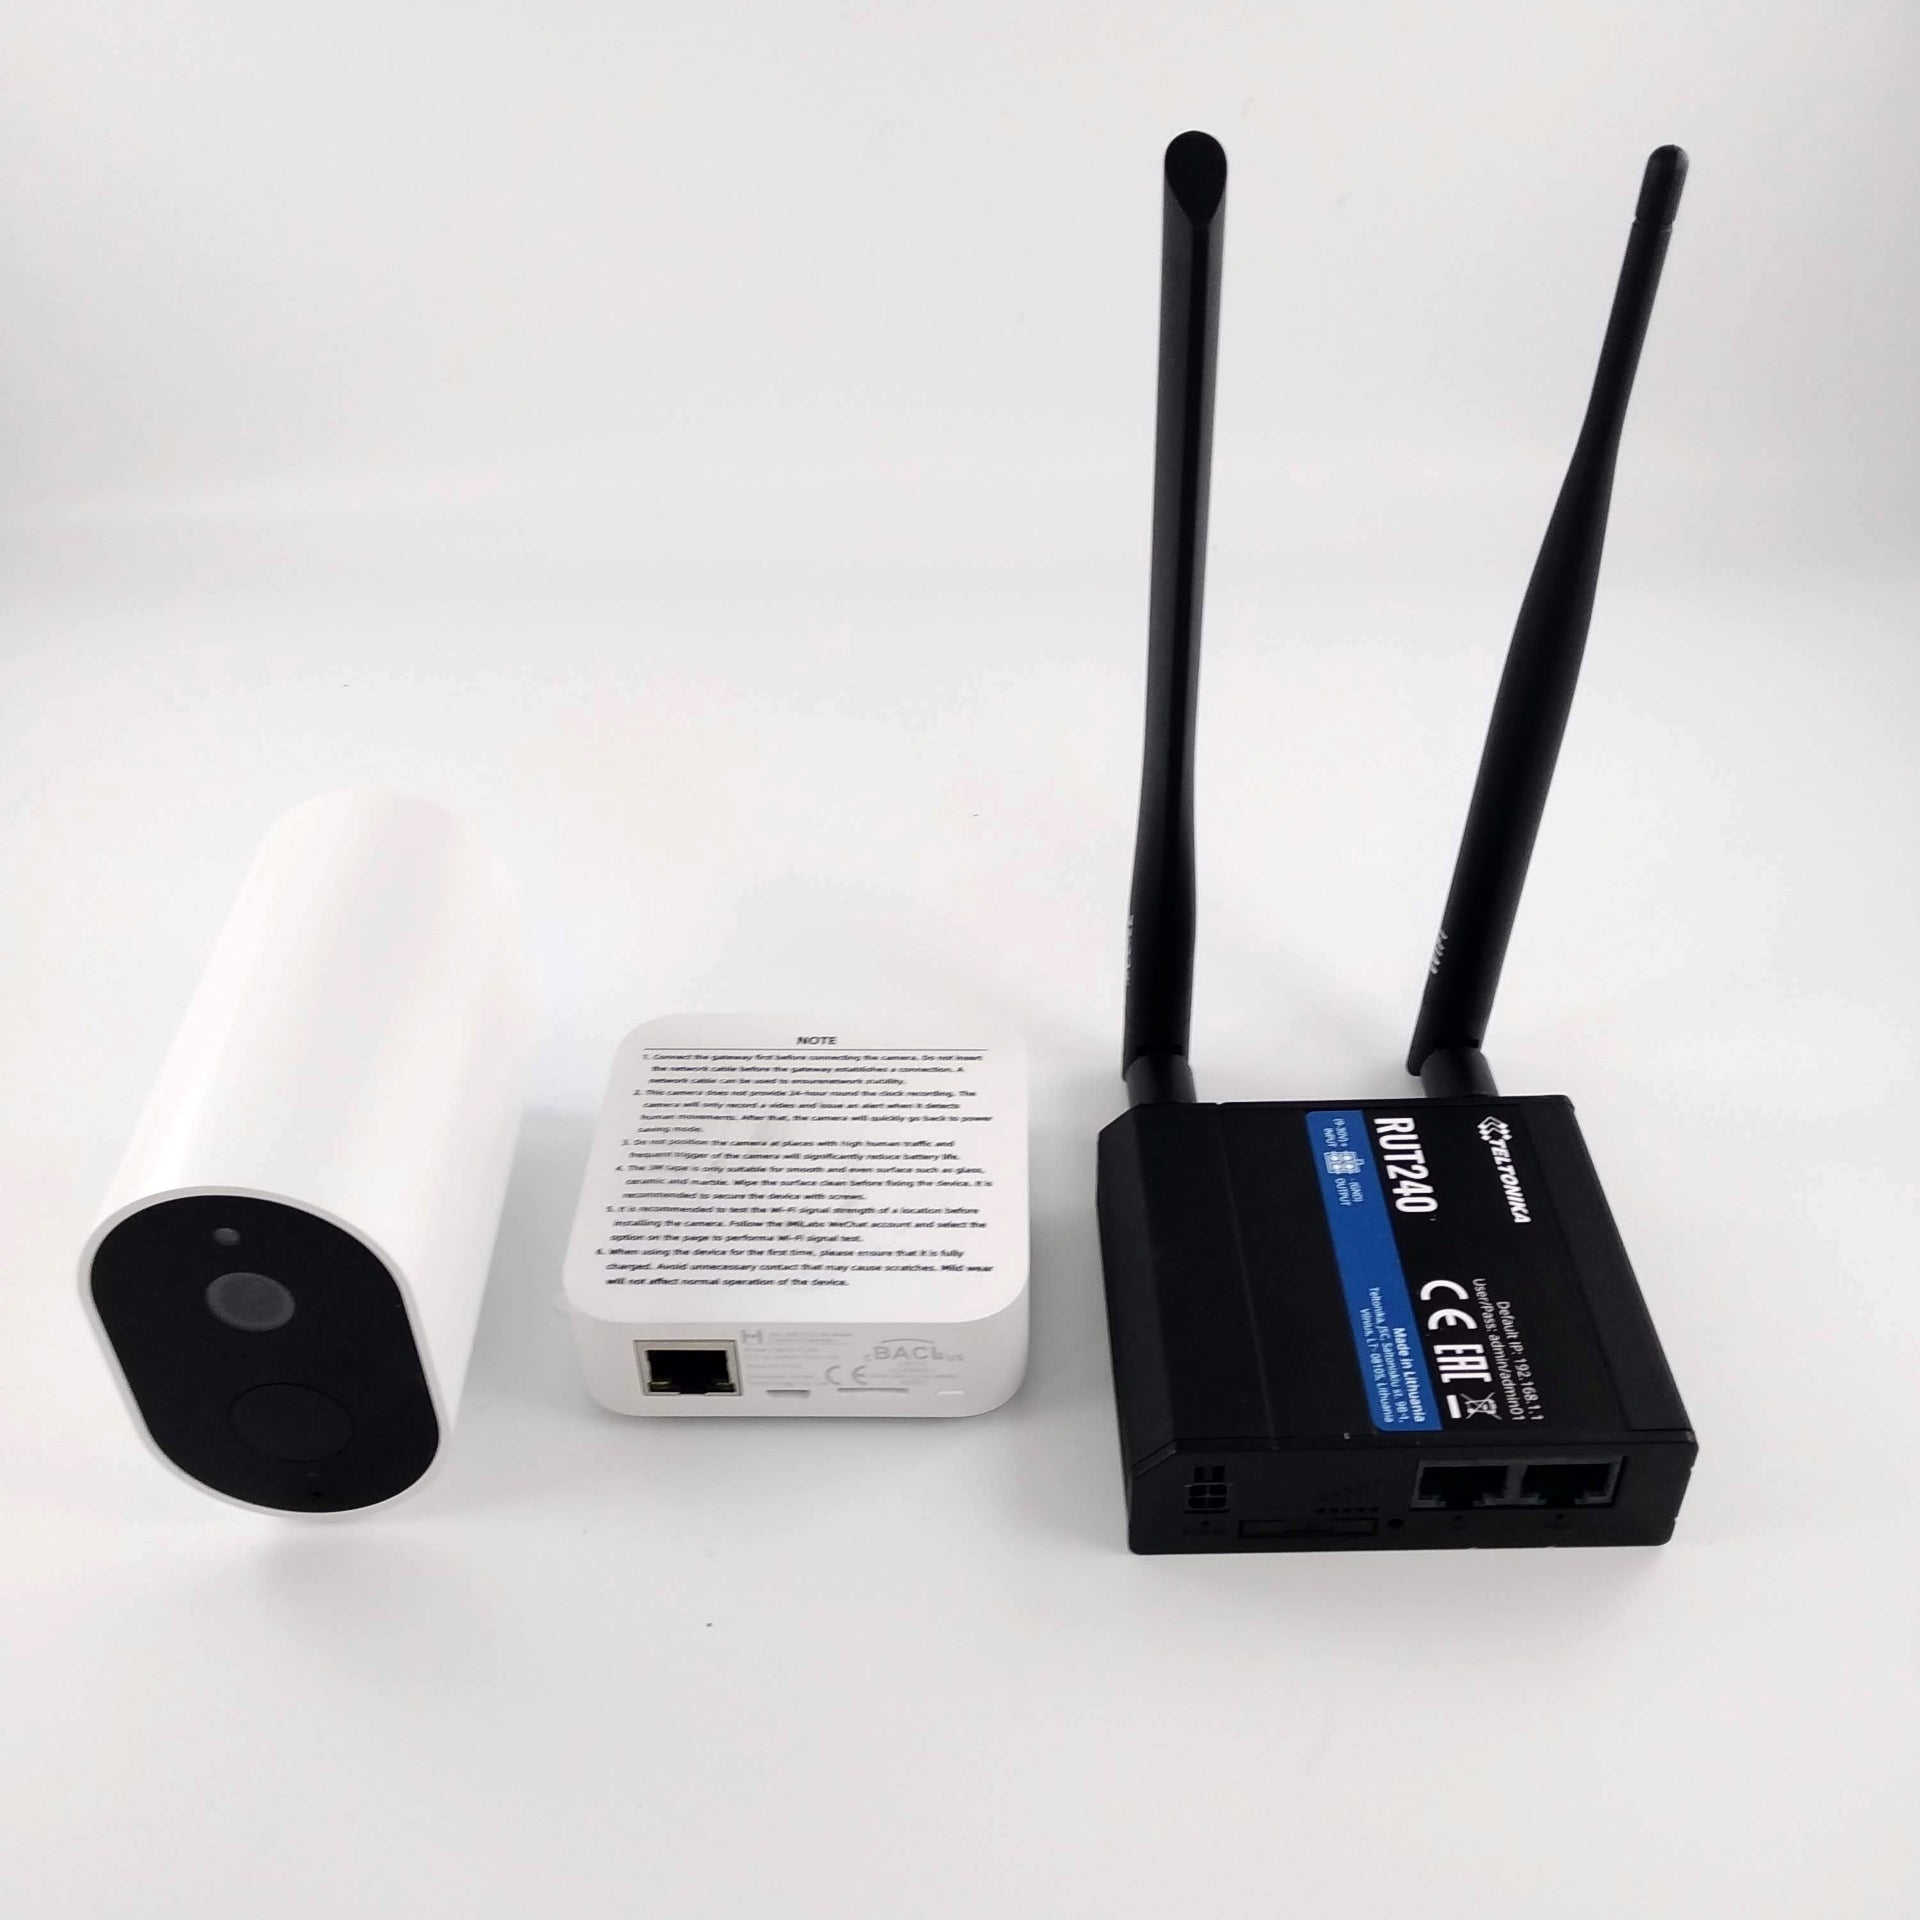 Routeur Wifi sans fil / carte SIM Sans fil 4 antennes Routeur